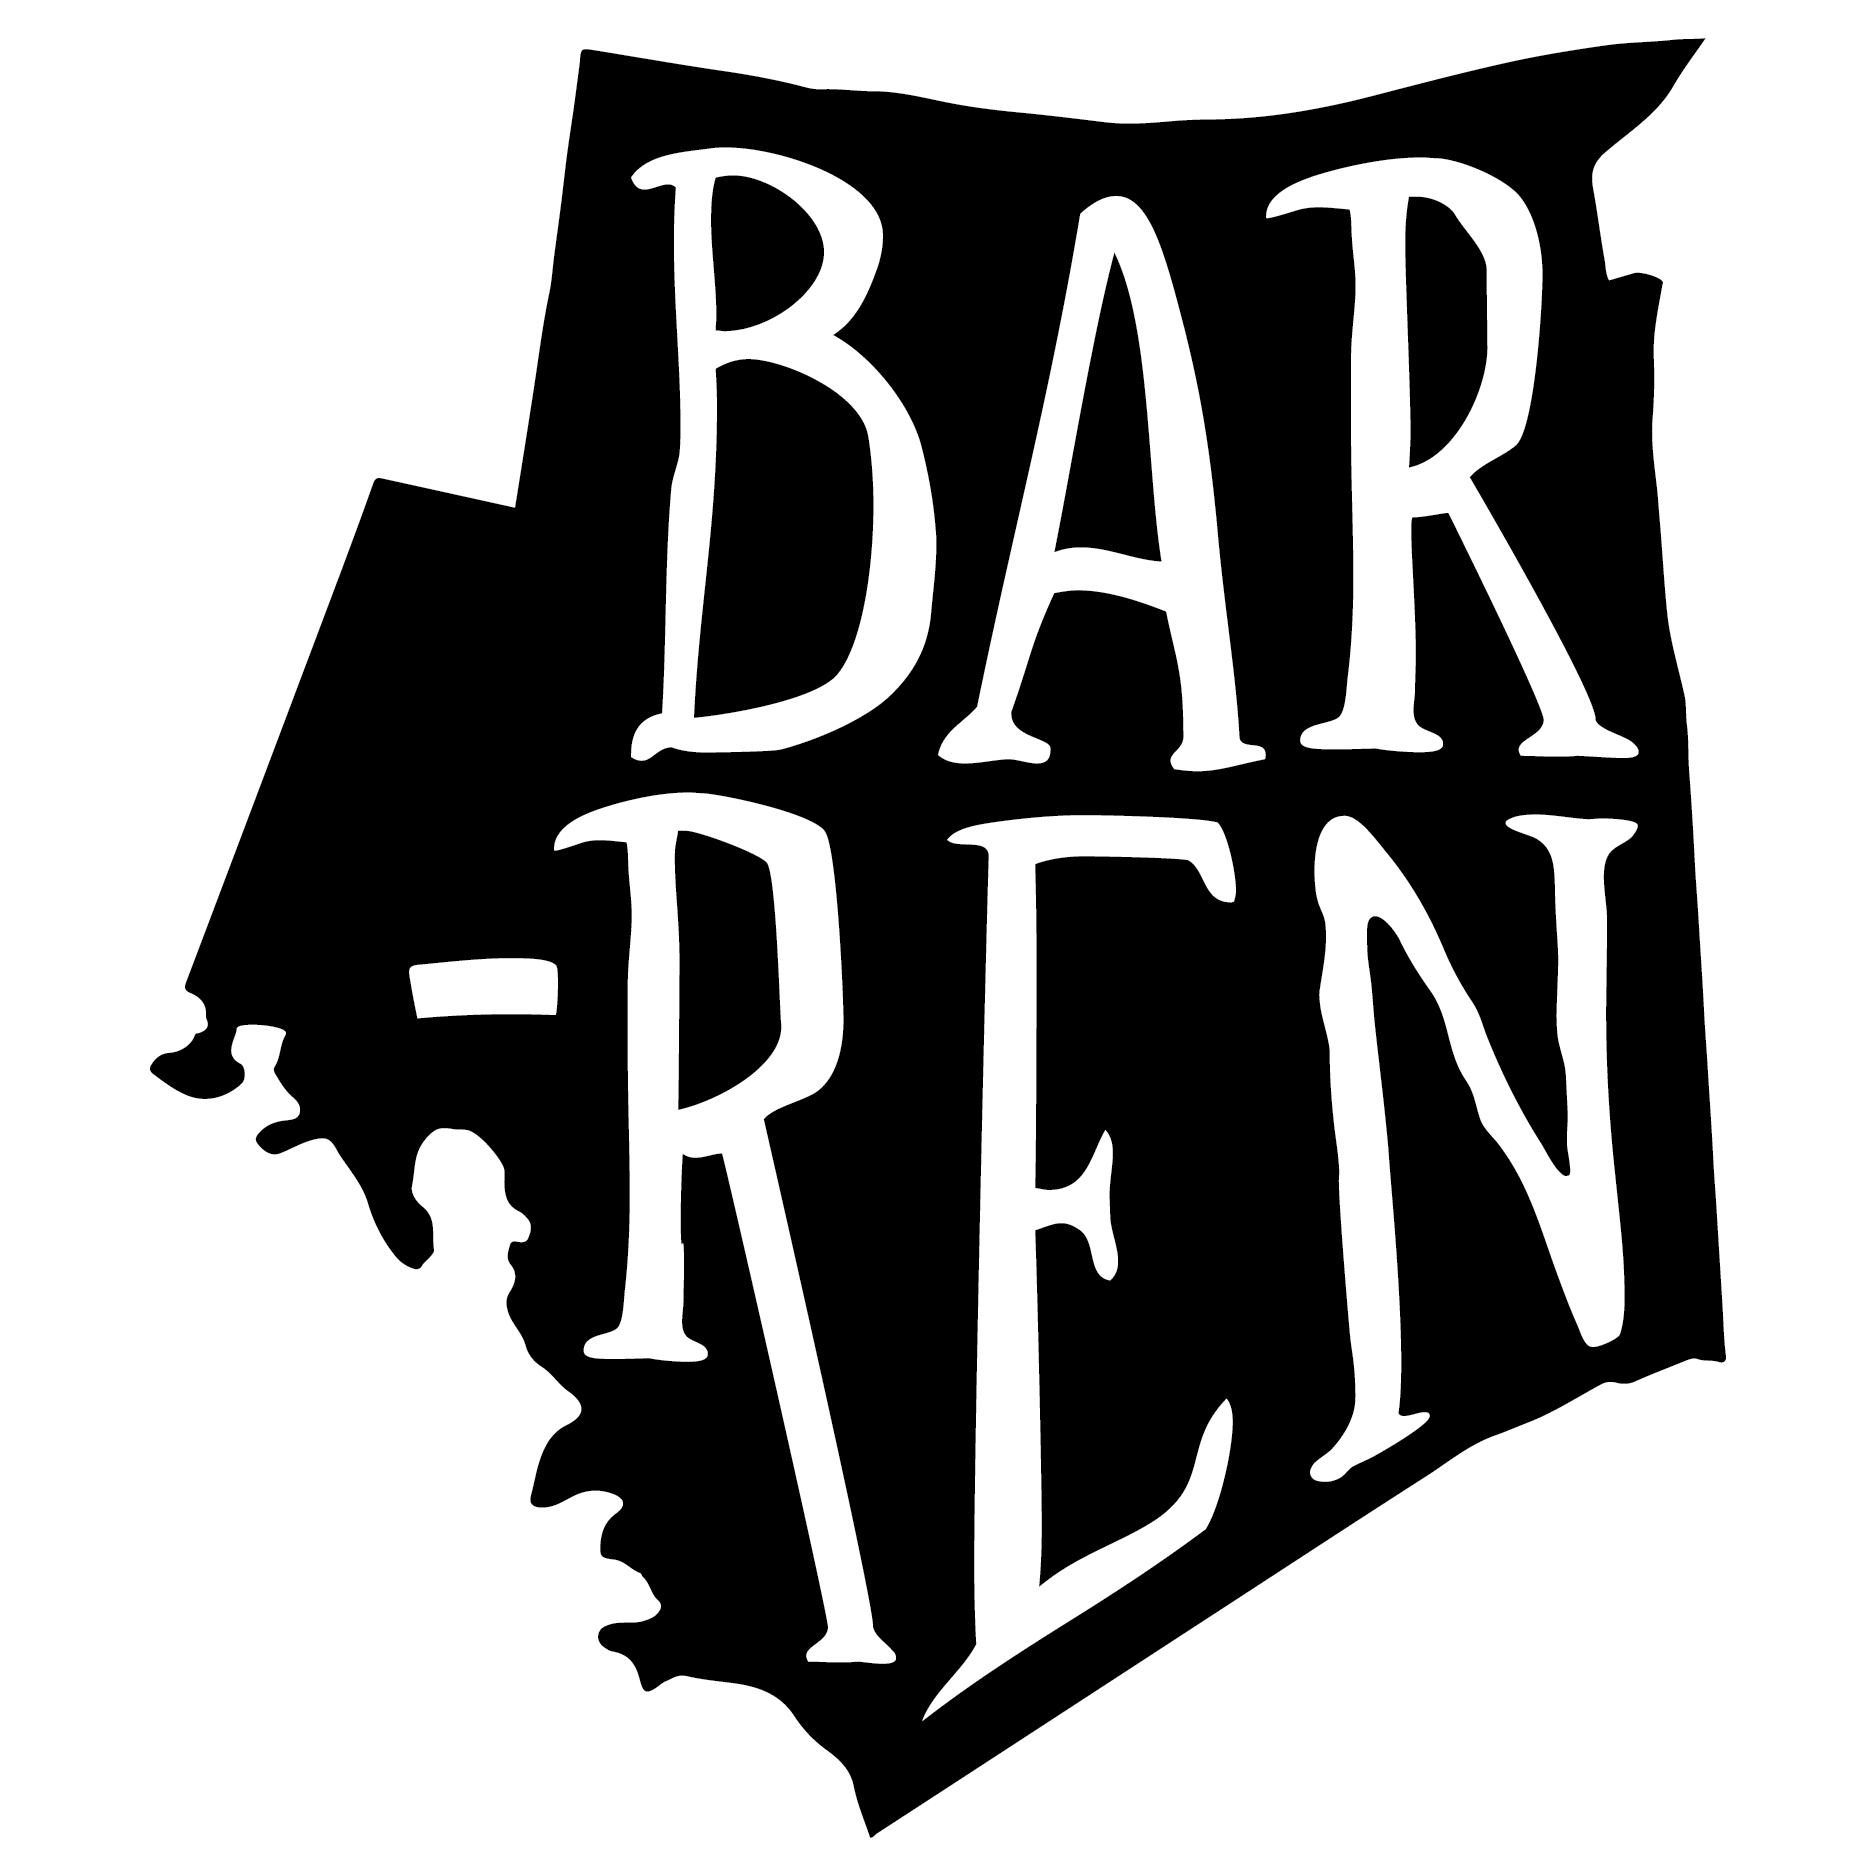 Barren-01.png